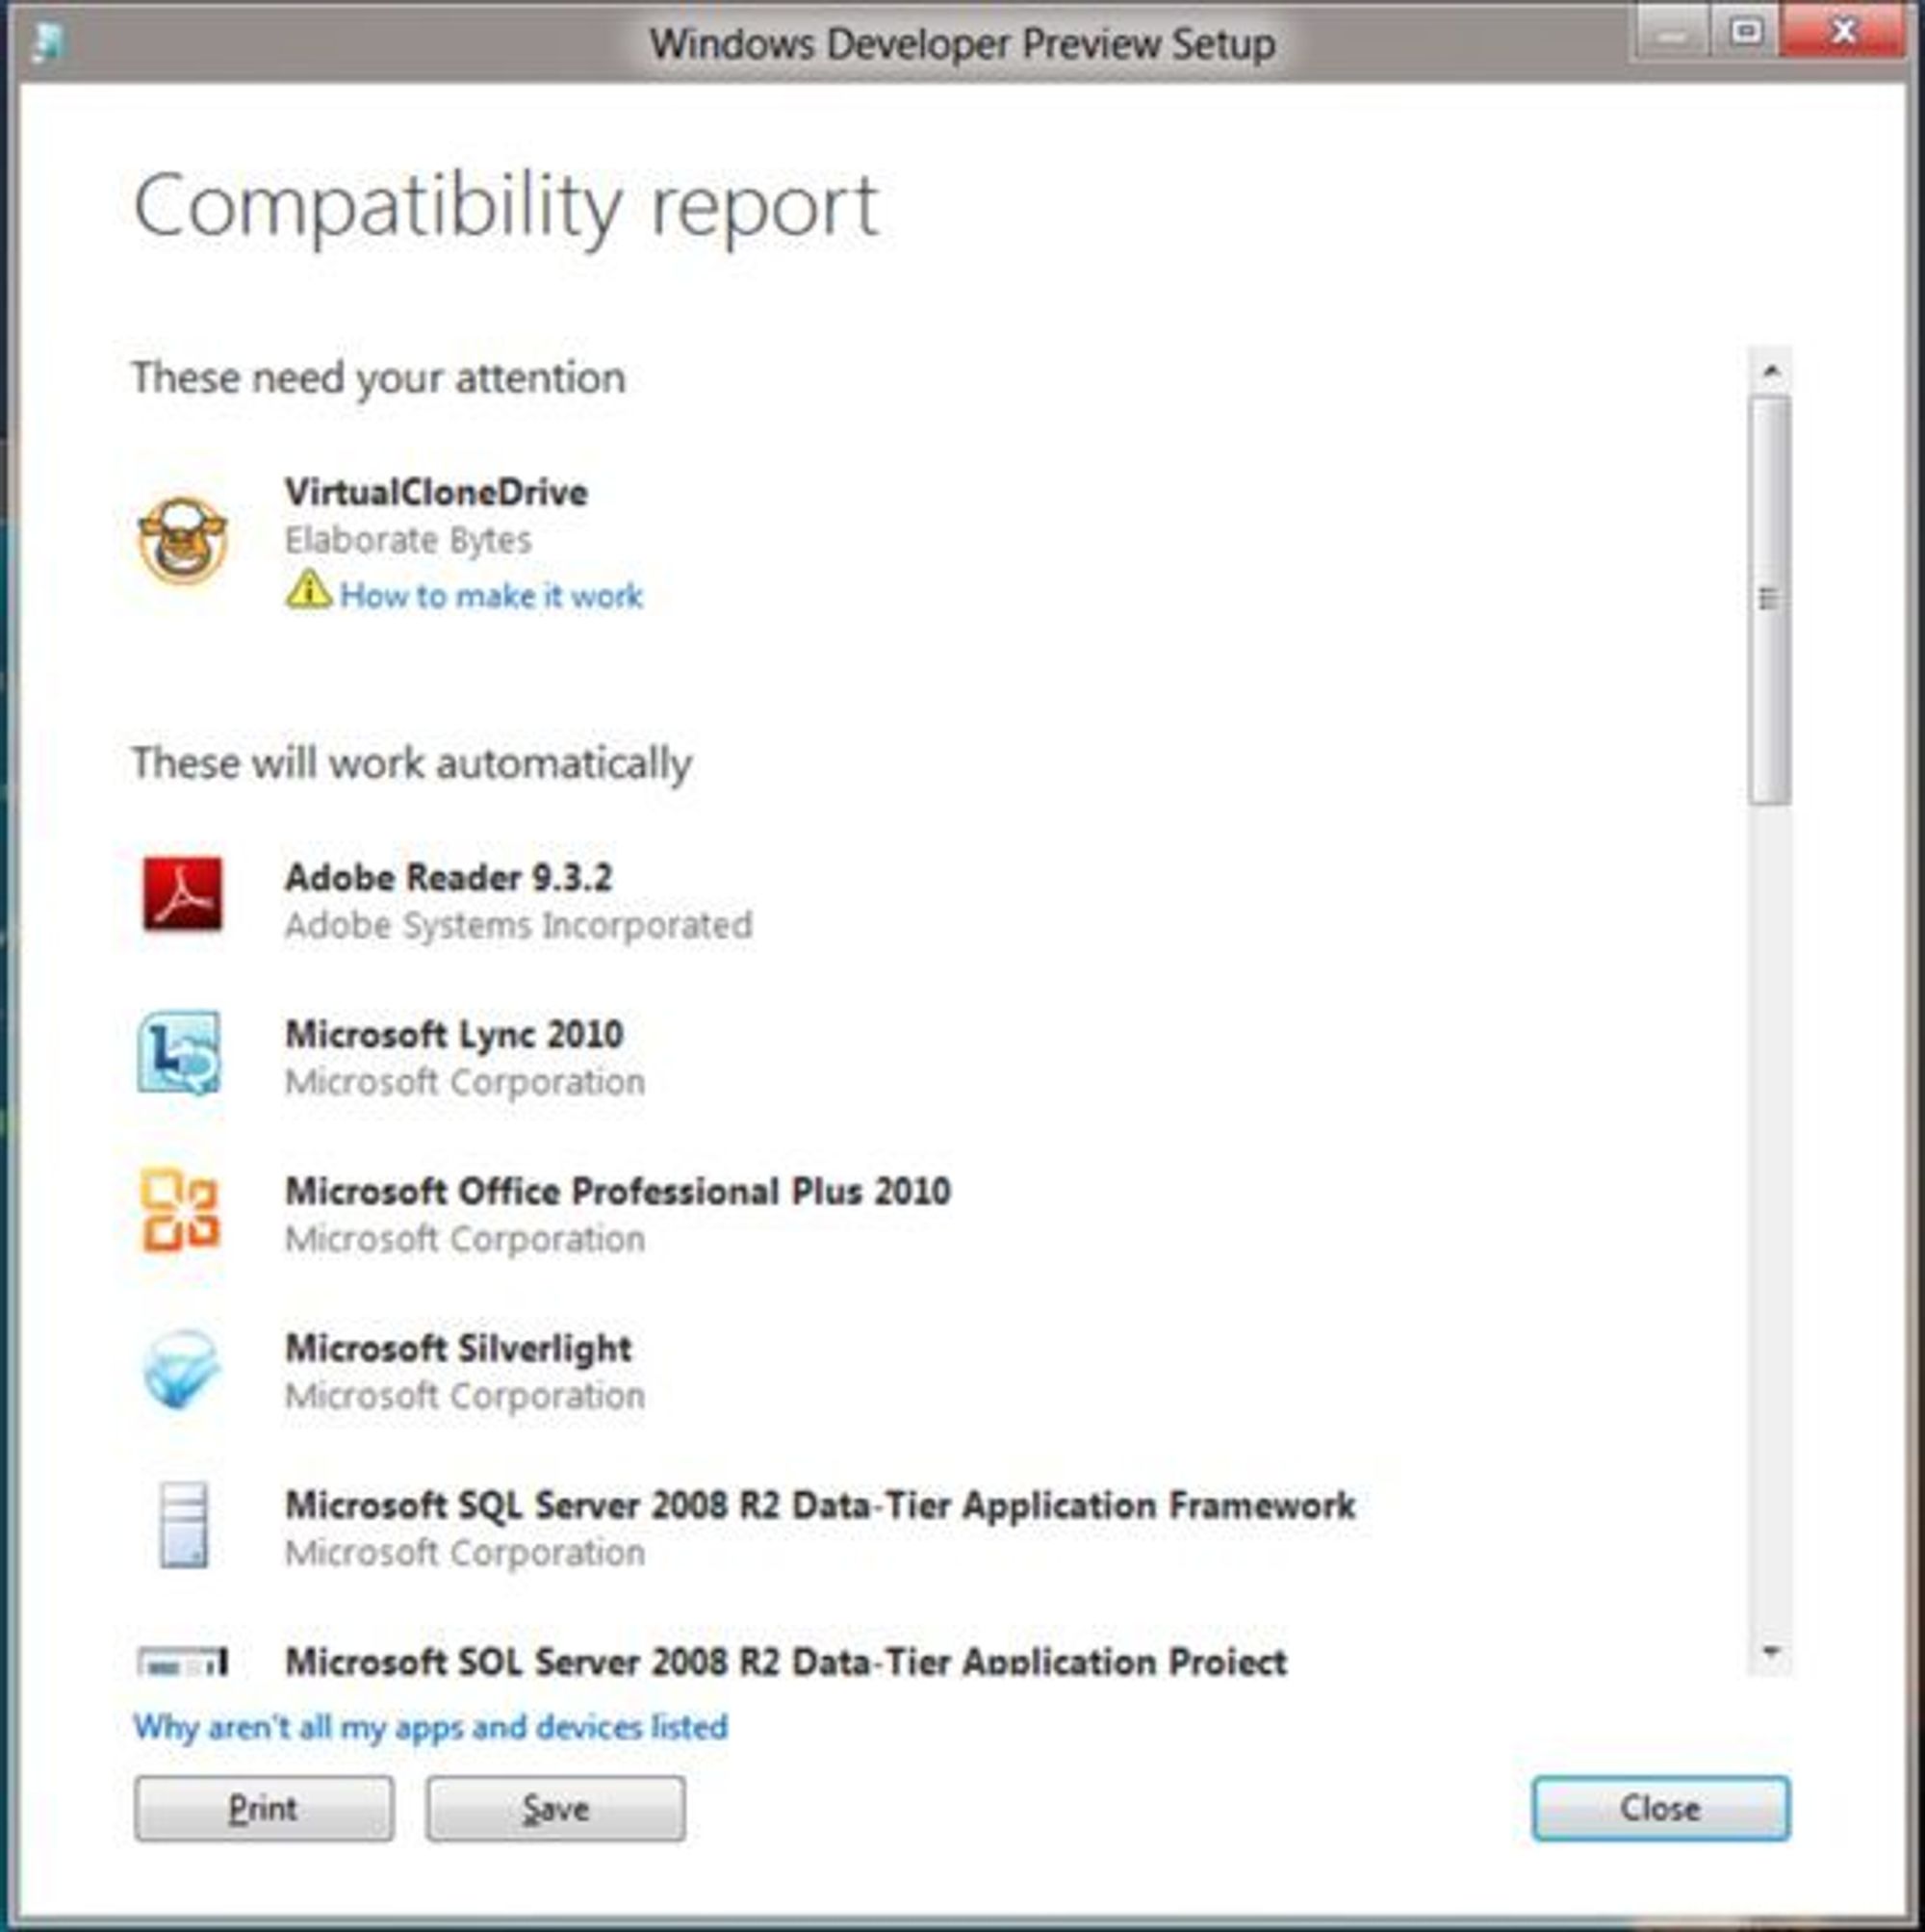 Ved oppgradering til Windows 8, skal installasjonsprogramvaren vise en oversikt over applikasjoner som trenger litt ekstra oppmerksomhet for å fungere i Windows 8. Problemene skal kunne løses av brukeren uten at installasjonsprosessen må startes på nytt.